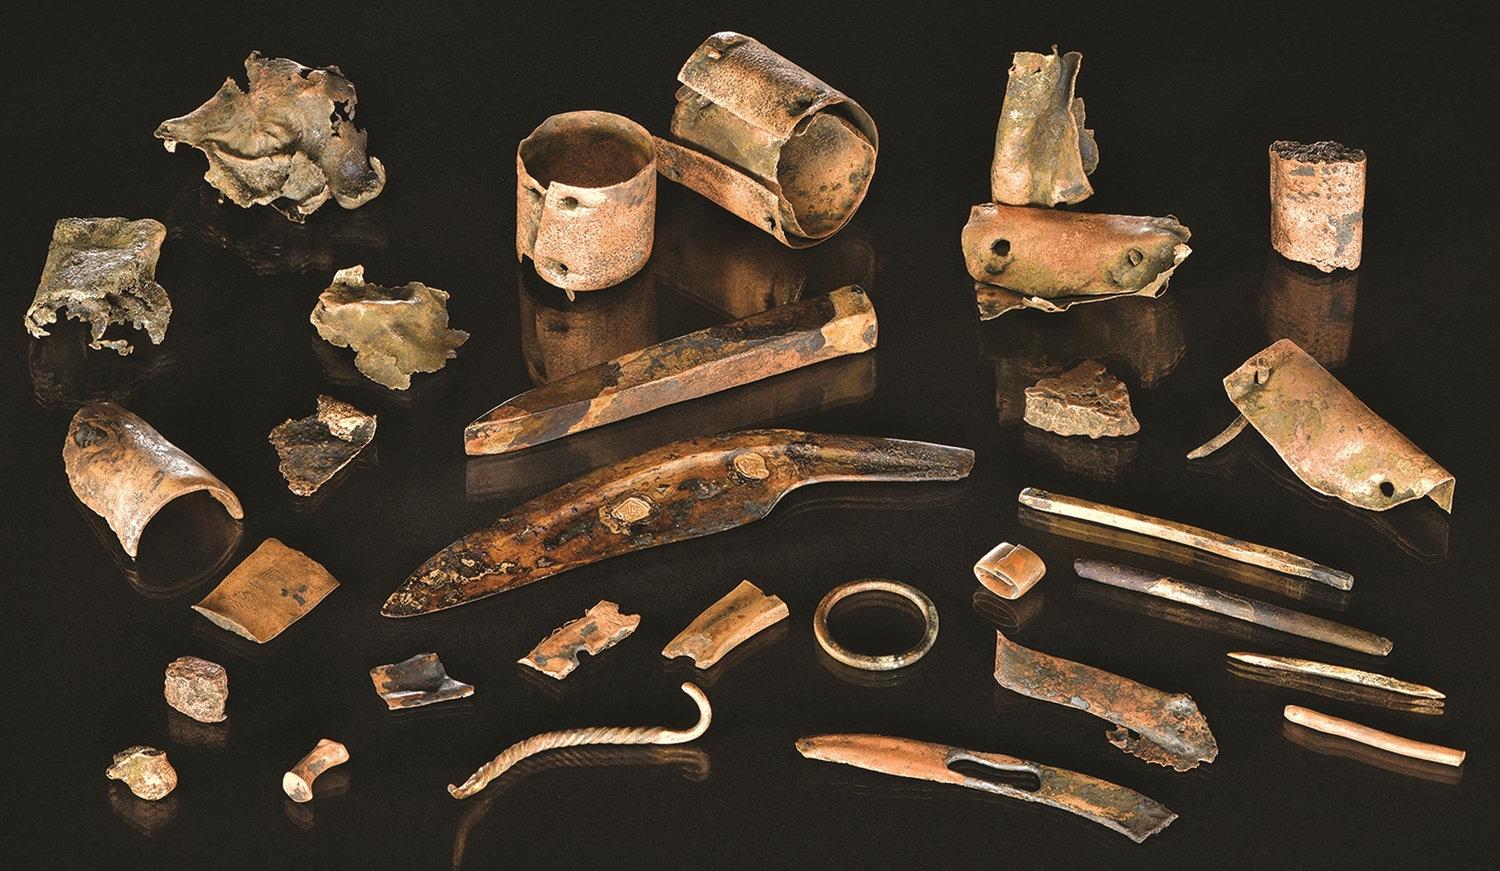 Verktygspåsen innehåller att antal bronsföremål, däribland en kniv och en mejsel. Påsen hittades på en plats där man tidigare hittat resterna från ett stort slag som ägde rum för 3 000 år sedan.